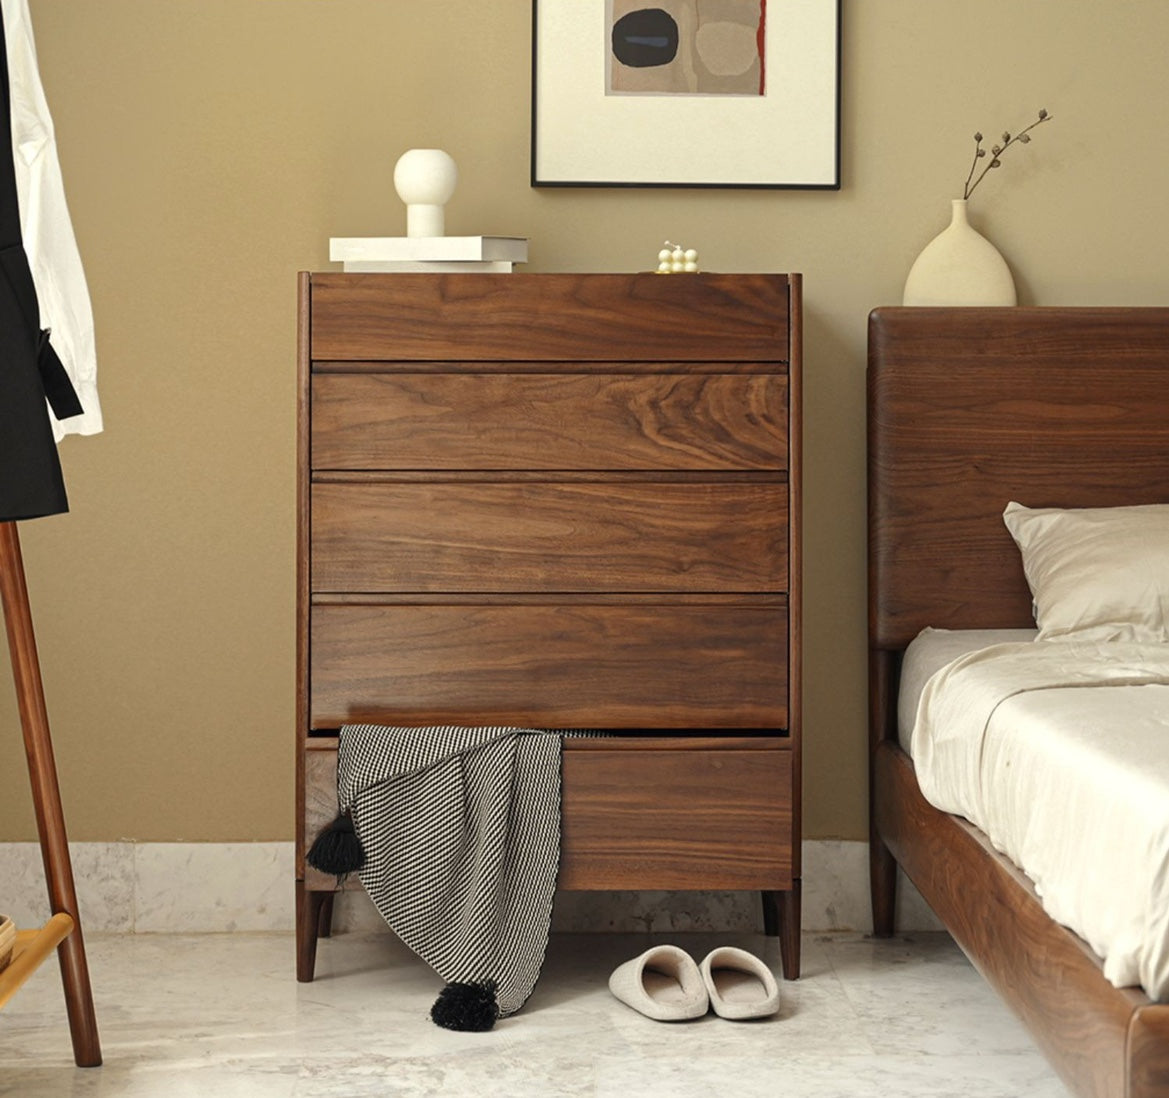 cómoda de madera de nogal, cómoda de madera maciza, cómoda de madera con 5 cajones, cómoda alta de madera